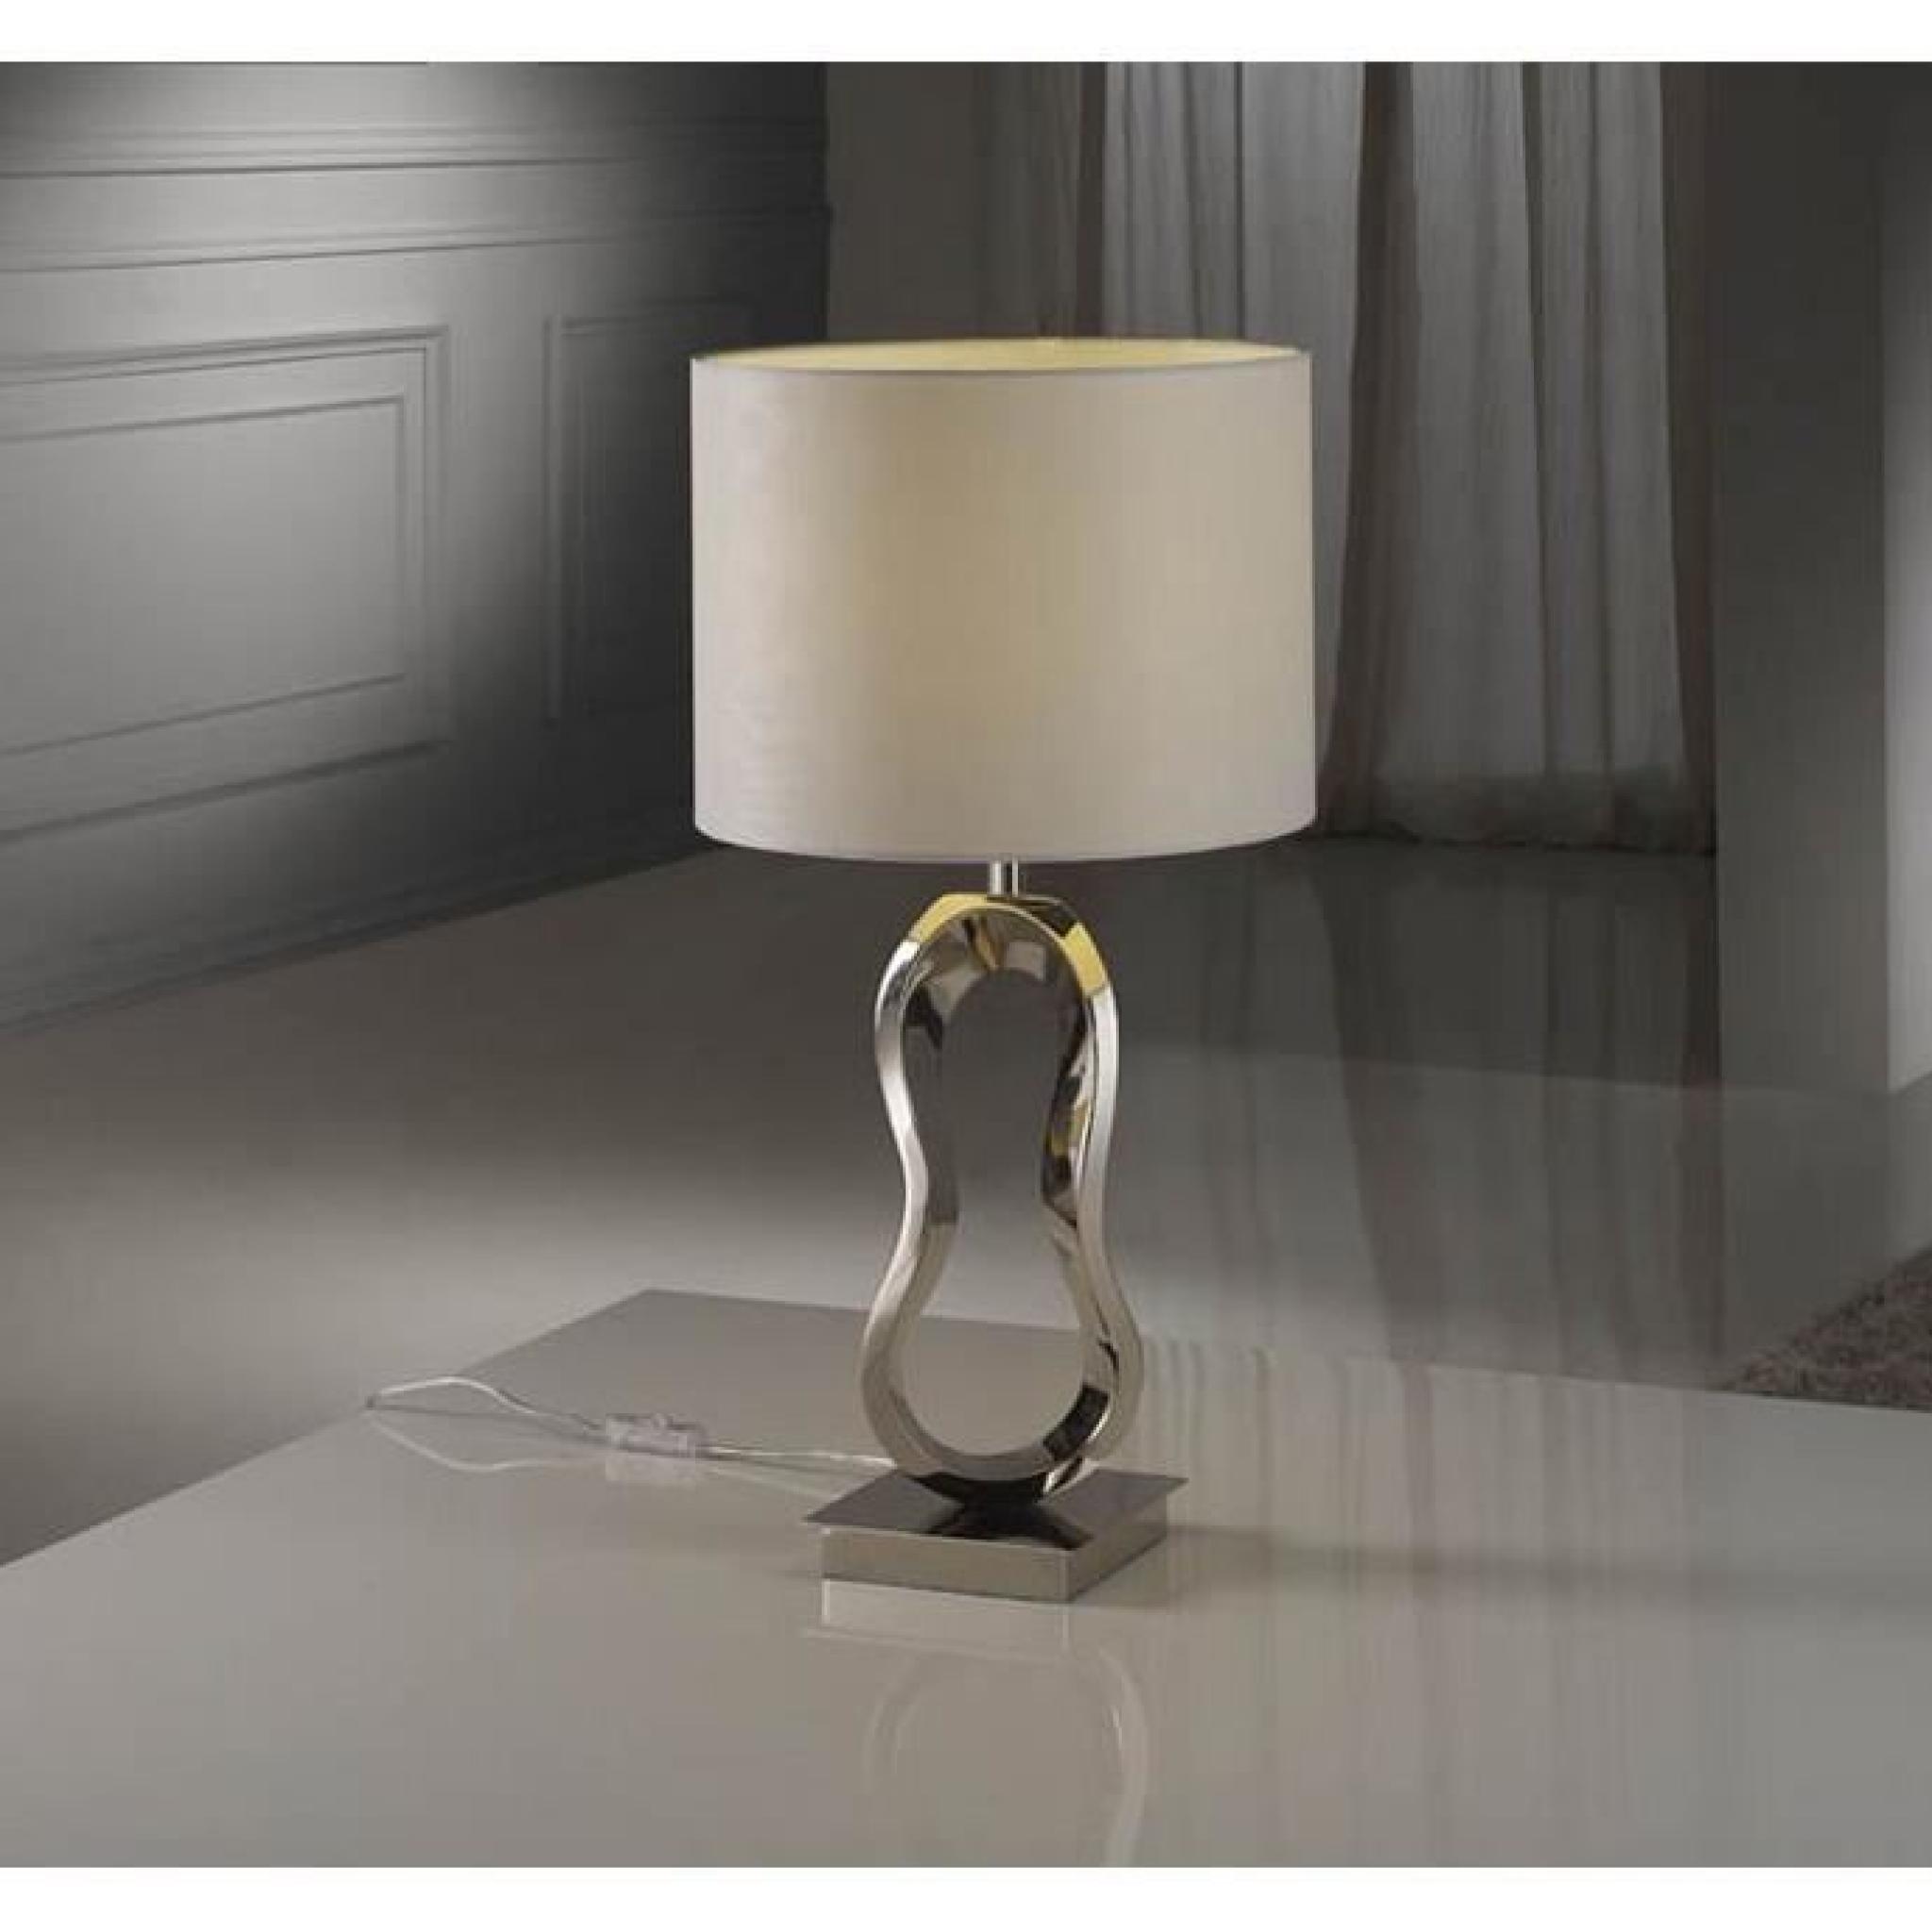 Lampe de table moderne : modèle INFINITY.